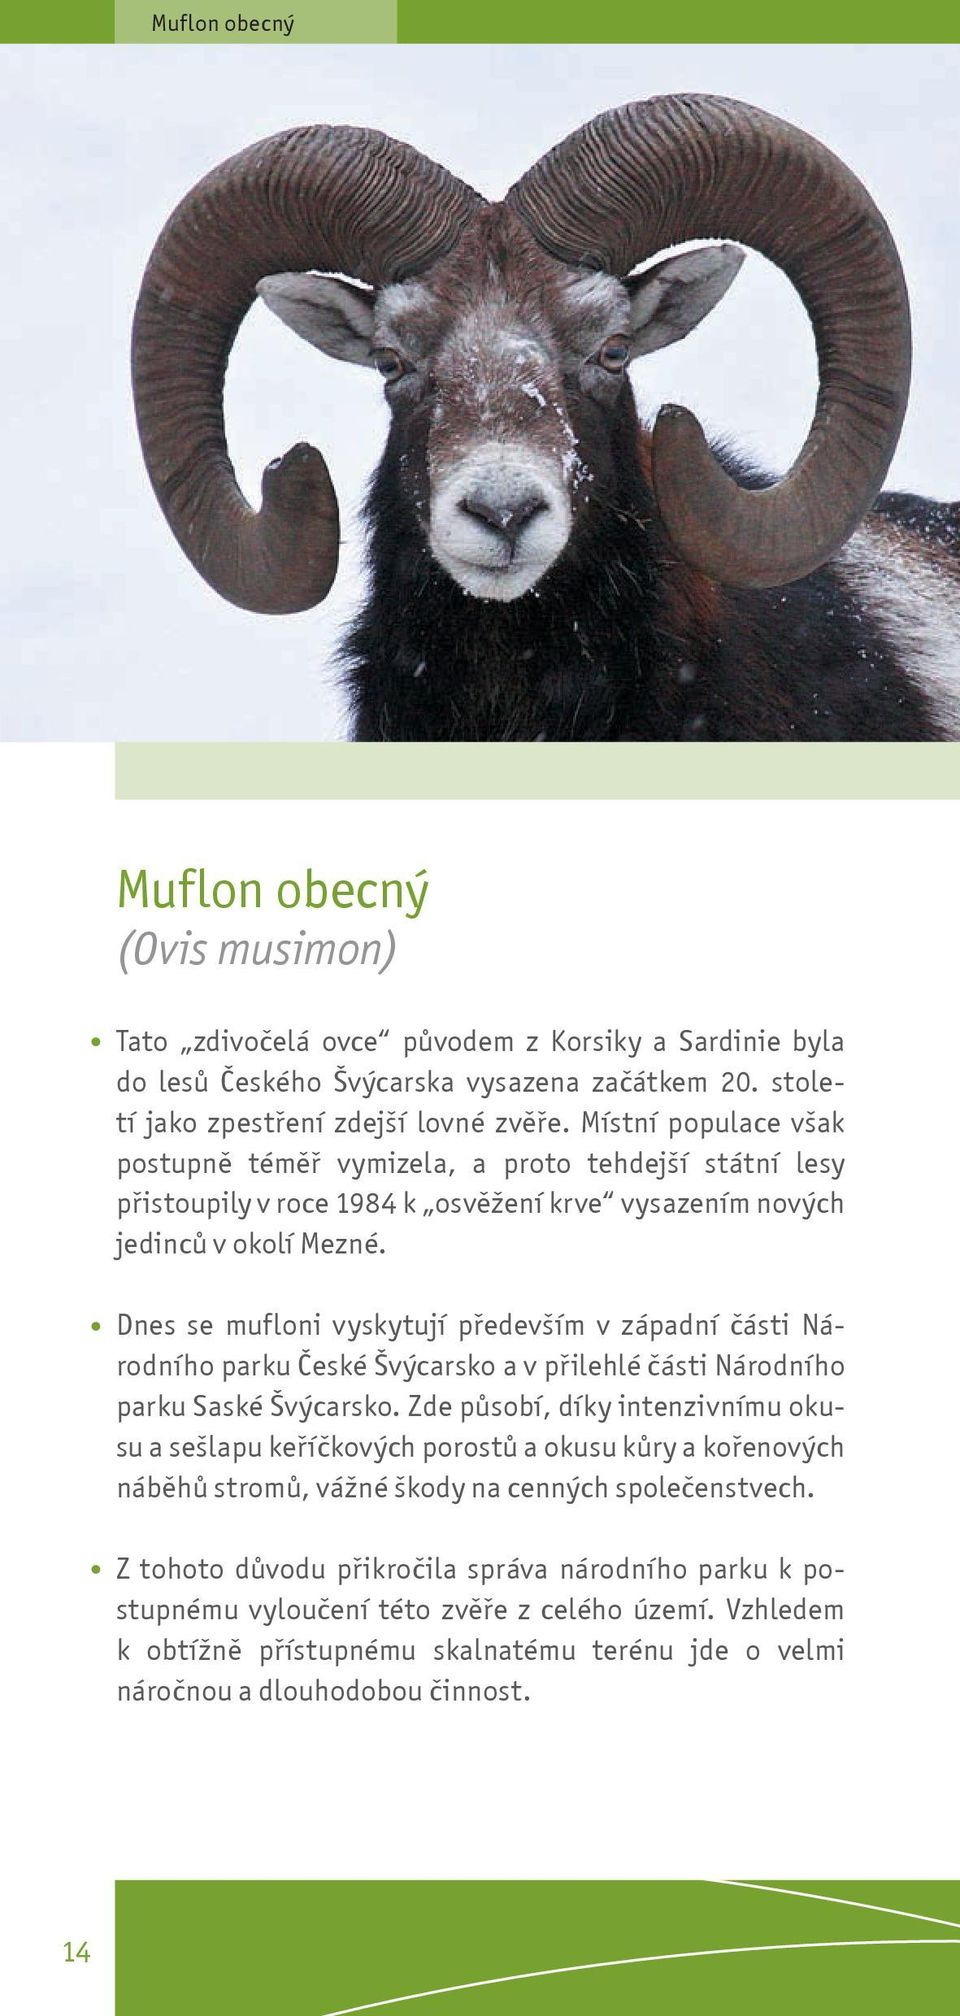 Dnes se mufloni vyskytují pøedevším v západní èásti Národního parku Èeské Švýcarsko a v pøilehlé èásti Národního parku Saské Švýcarsko.